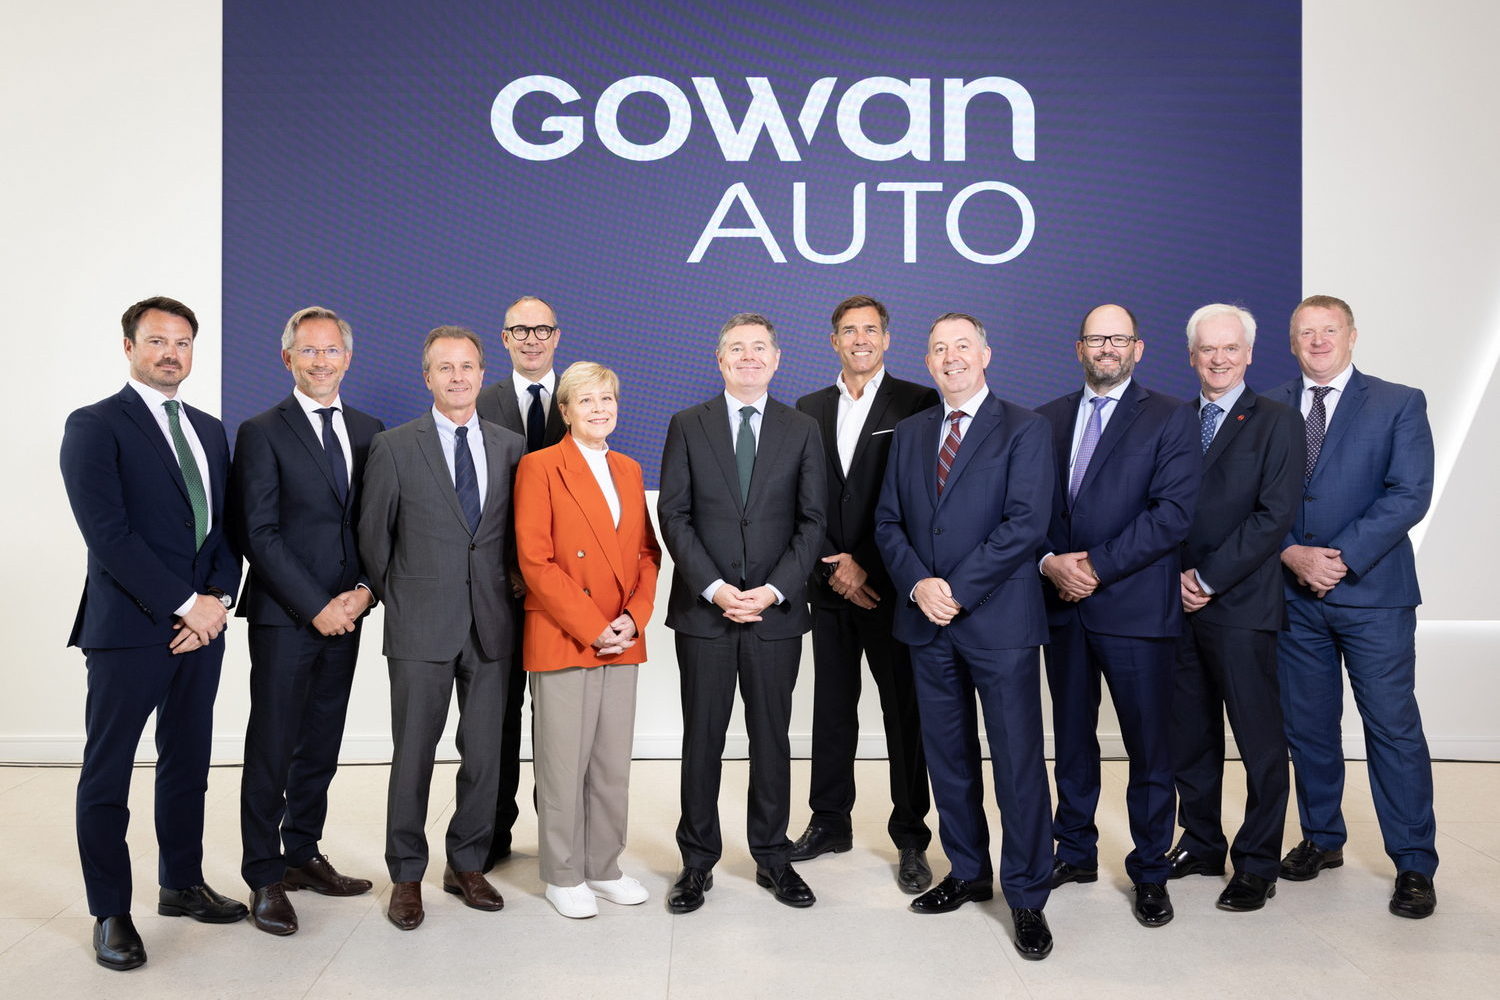 Gowan Auto opens €30m distribution centre